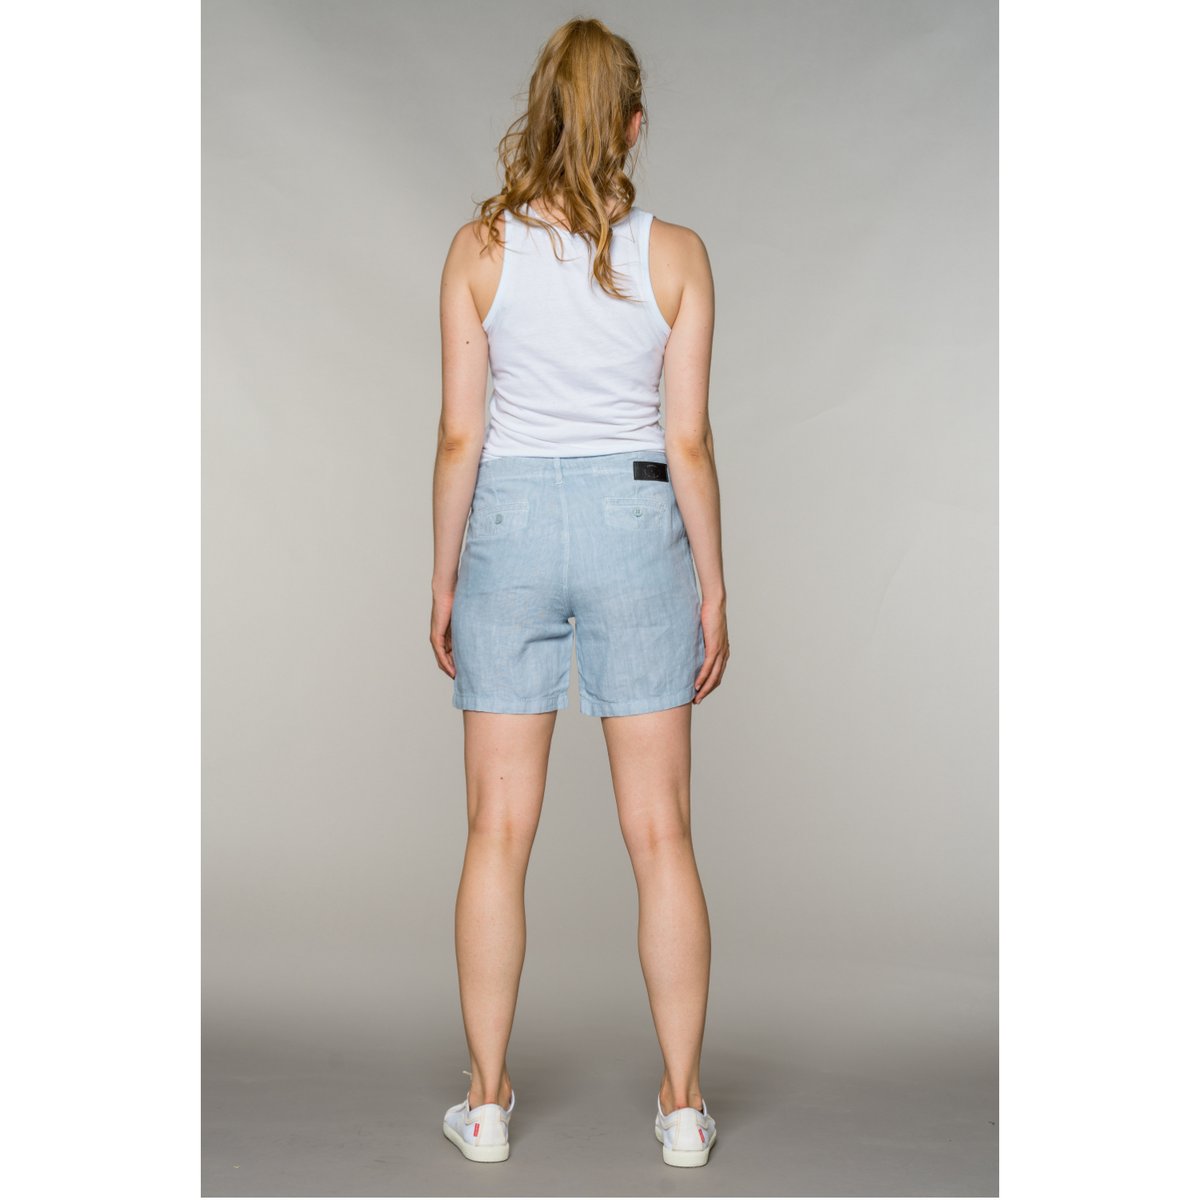 fv-Sti:na | Shorts | Pure Linen I feuervogl